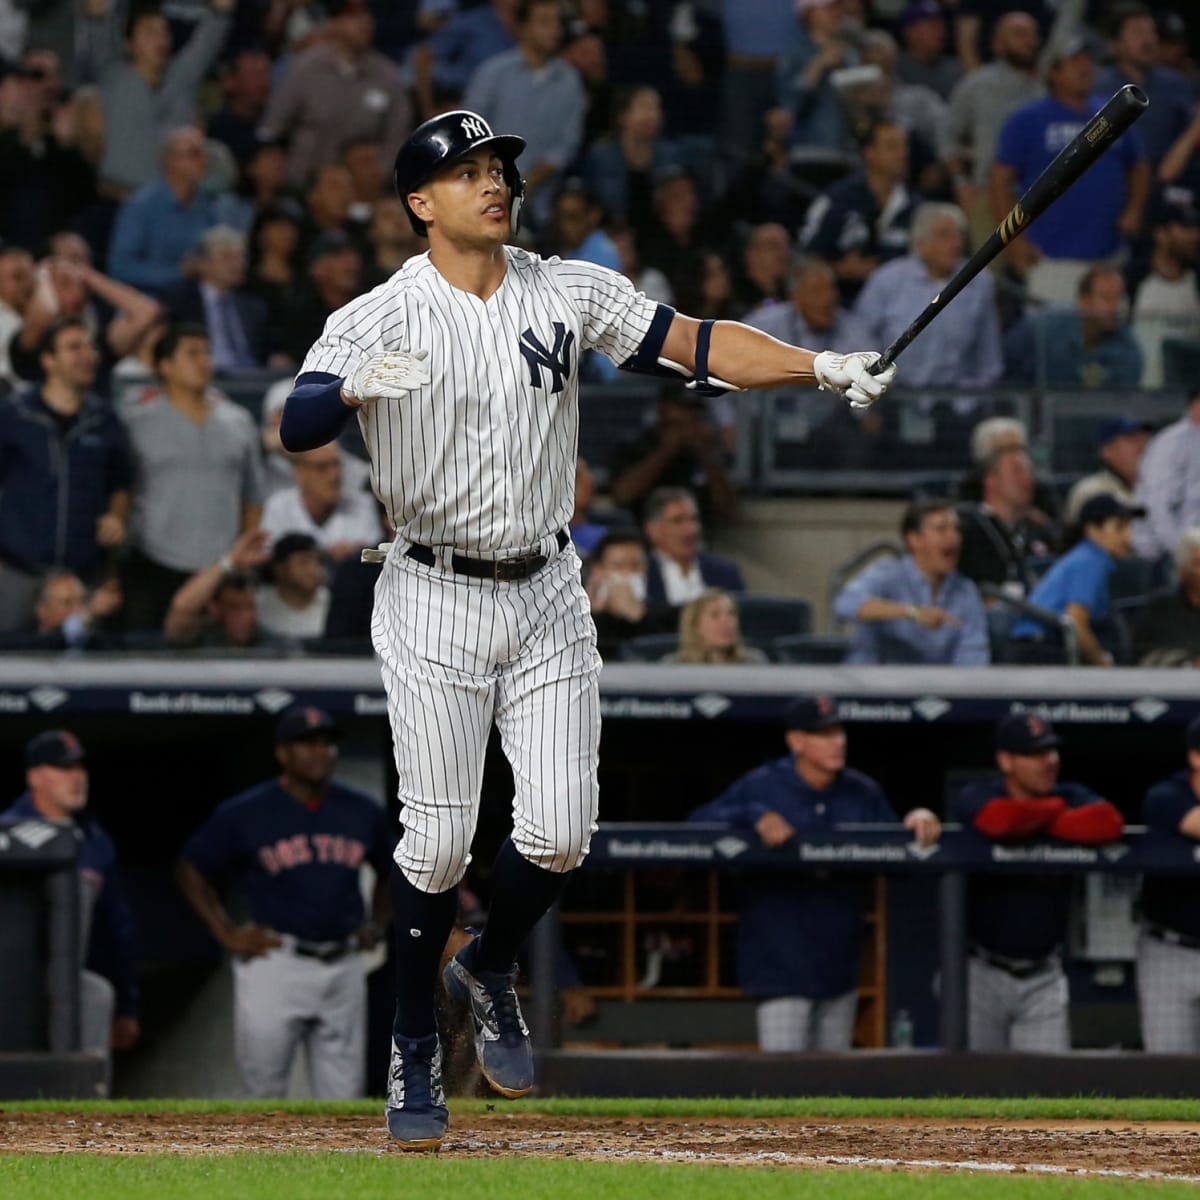 Yankees' Giancarlo Stanton named All-Star starter